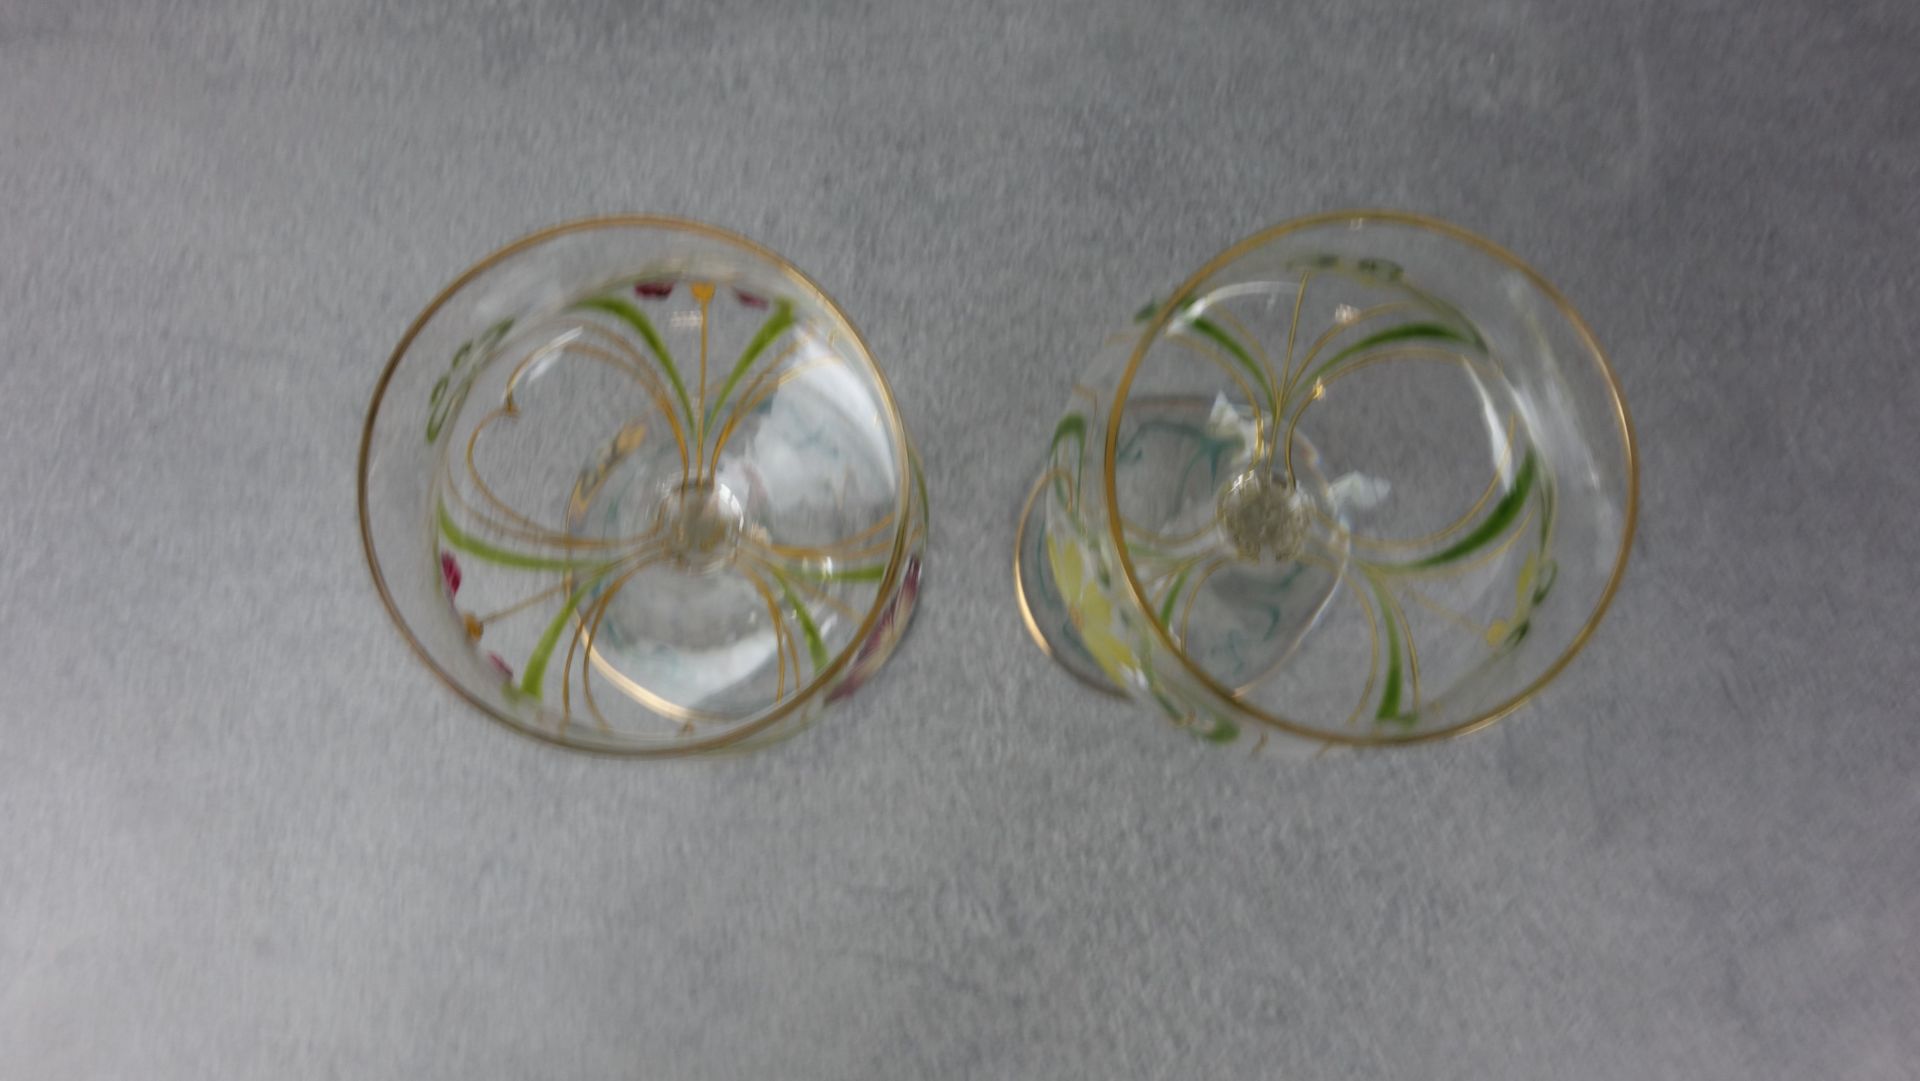 ART NOUVEAU WINE GLASSES - Image 3 of 4